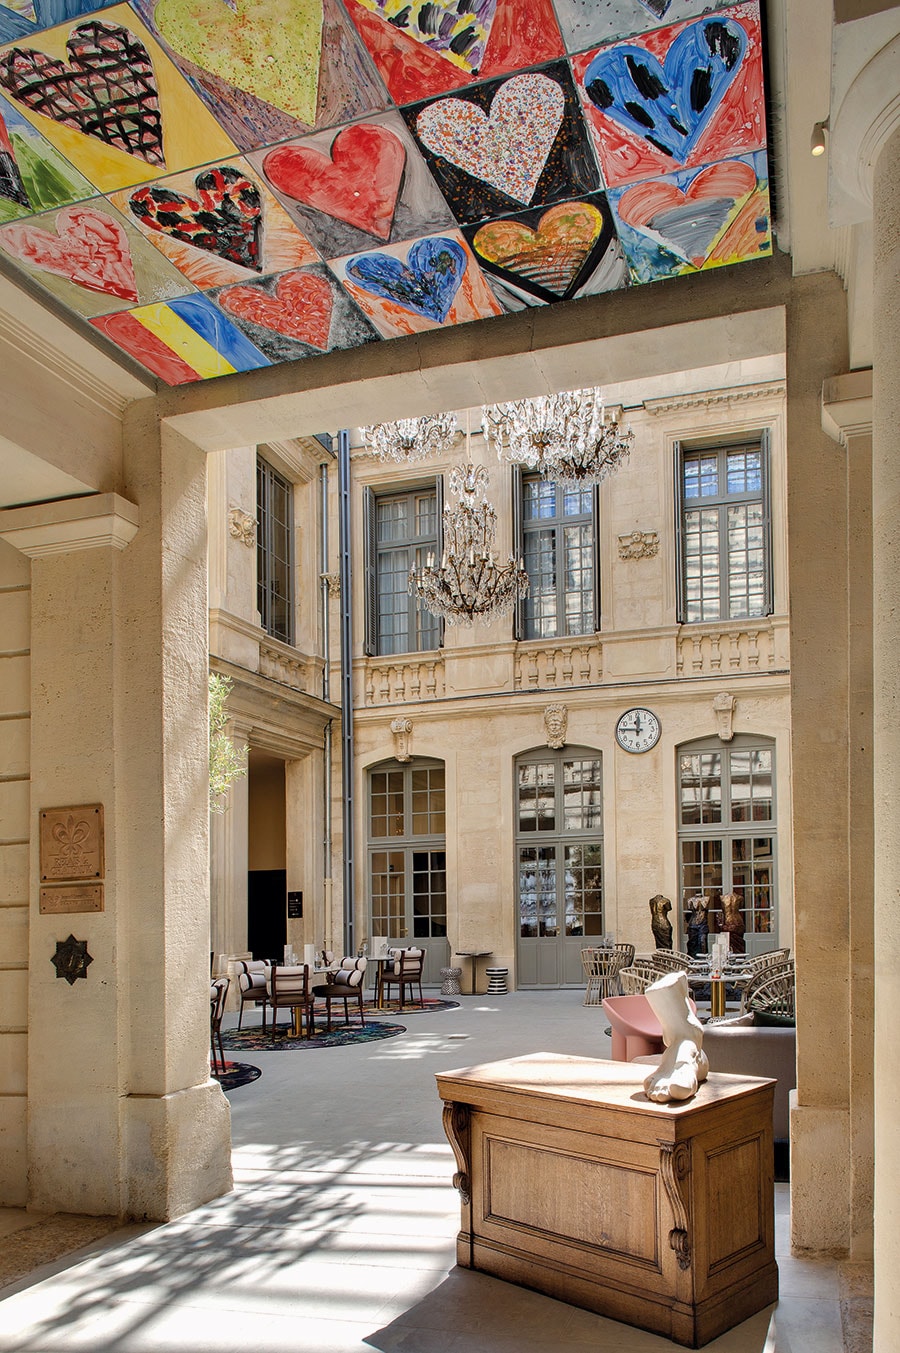 ミュージアムも内包する。アメリカのポップアート作家ジム・ダイン氏の巨大作品《天井は踊る》は常設展示。